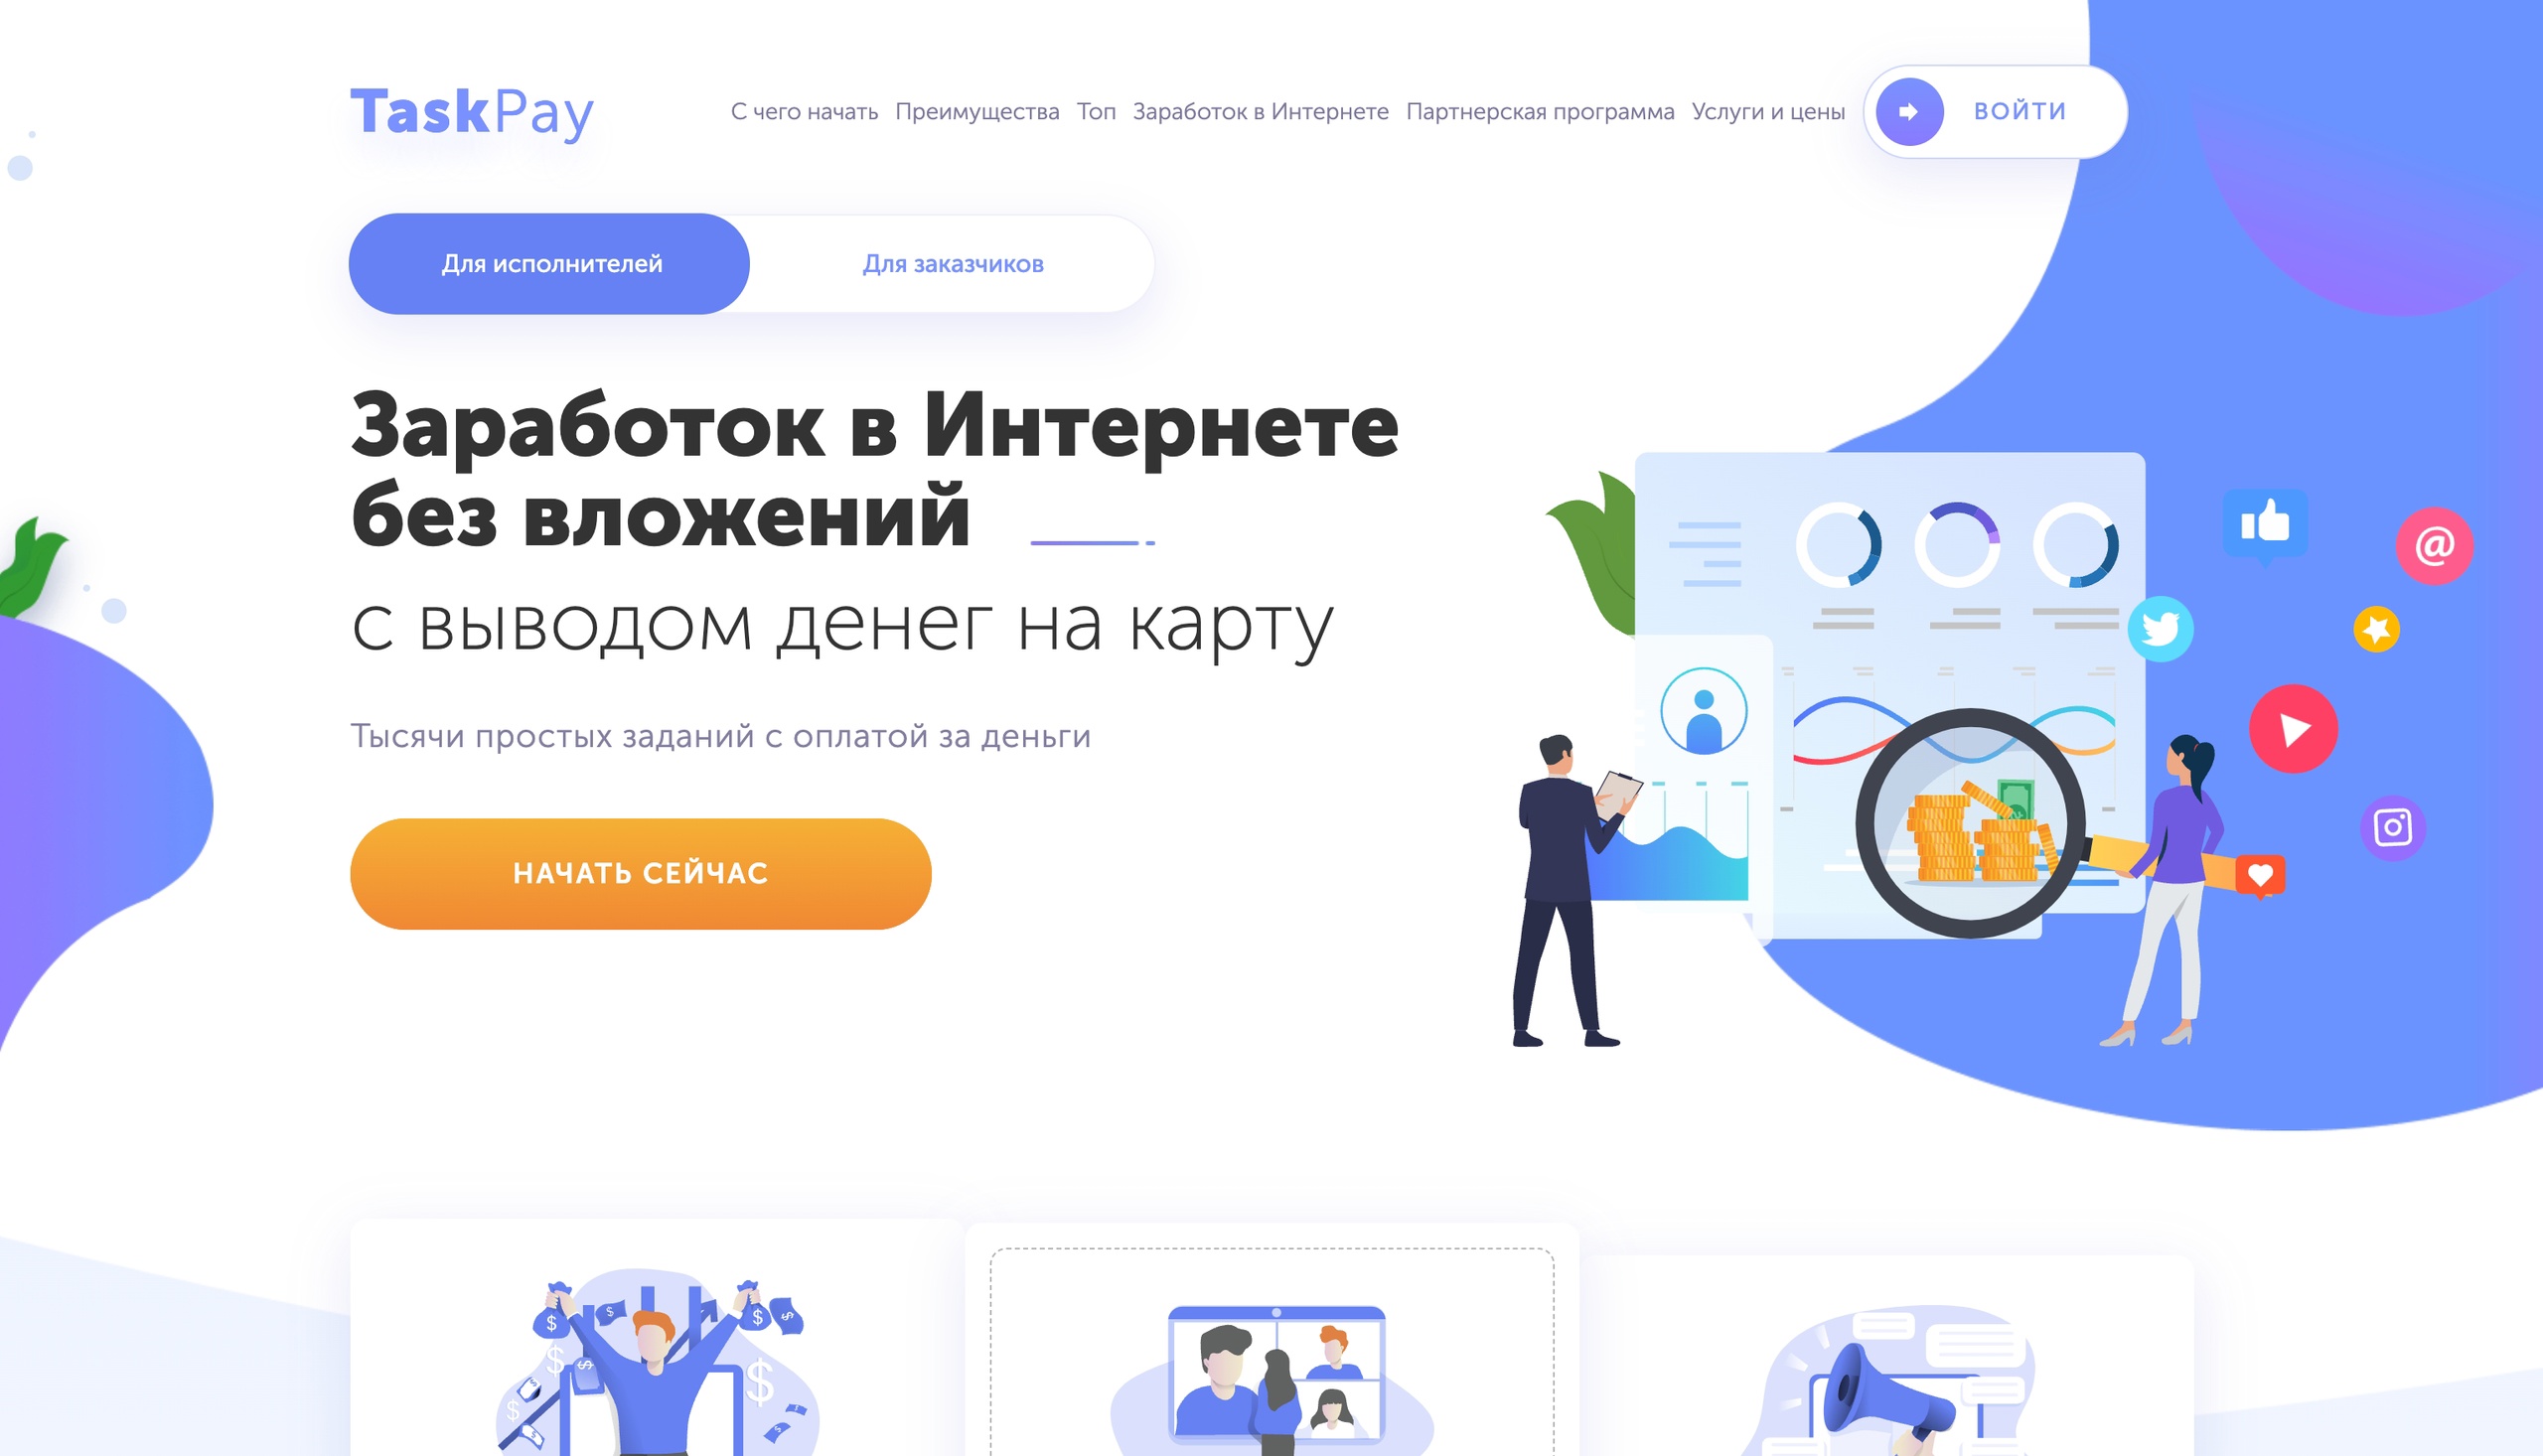 taskpay.ru